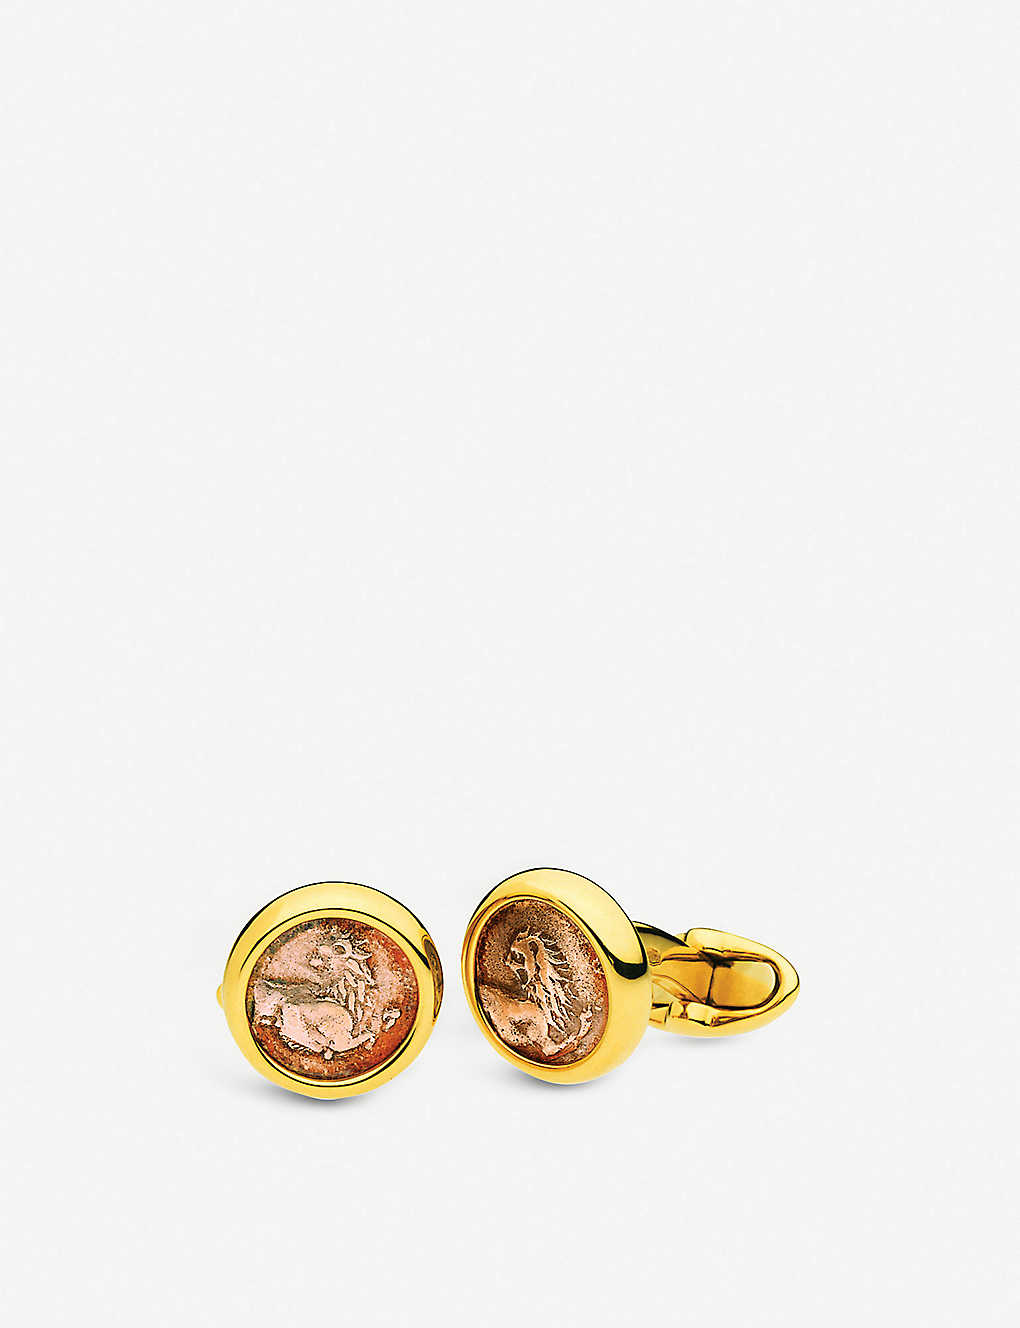 Monkey Selfridges & Co Men Accessories Jewelry Cufflinks toned cufflinks 